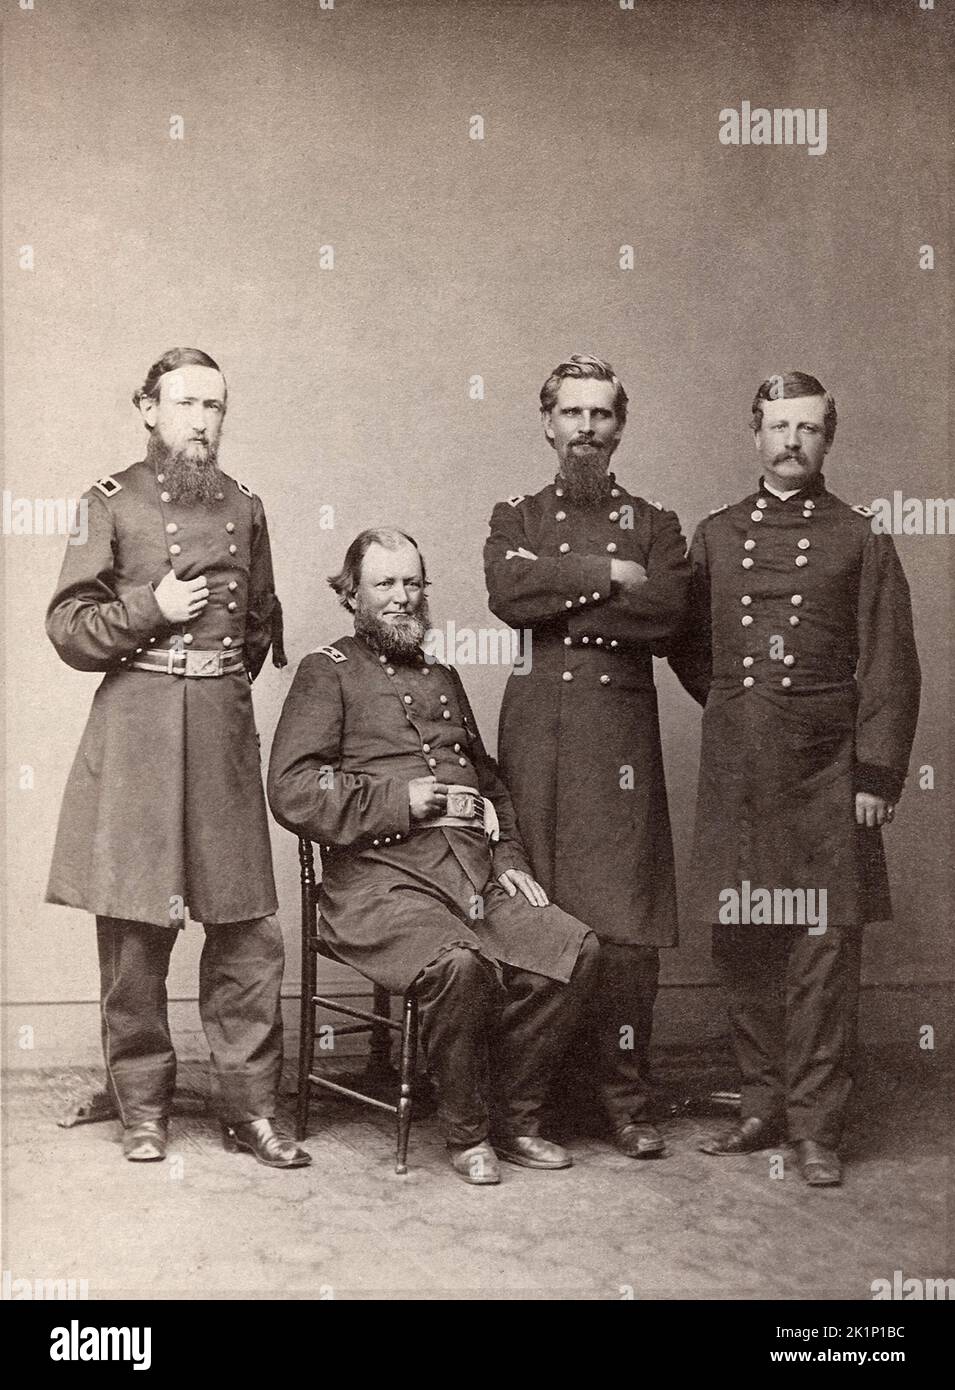 Le président Benjamin Harrison en tant que général de brigade (à gauche) avec d'autres commandants du XX corps pendant la guerre civile américaine en 1865. Banque D'Images